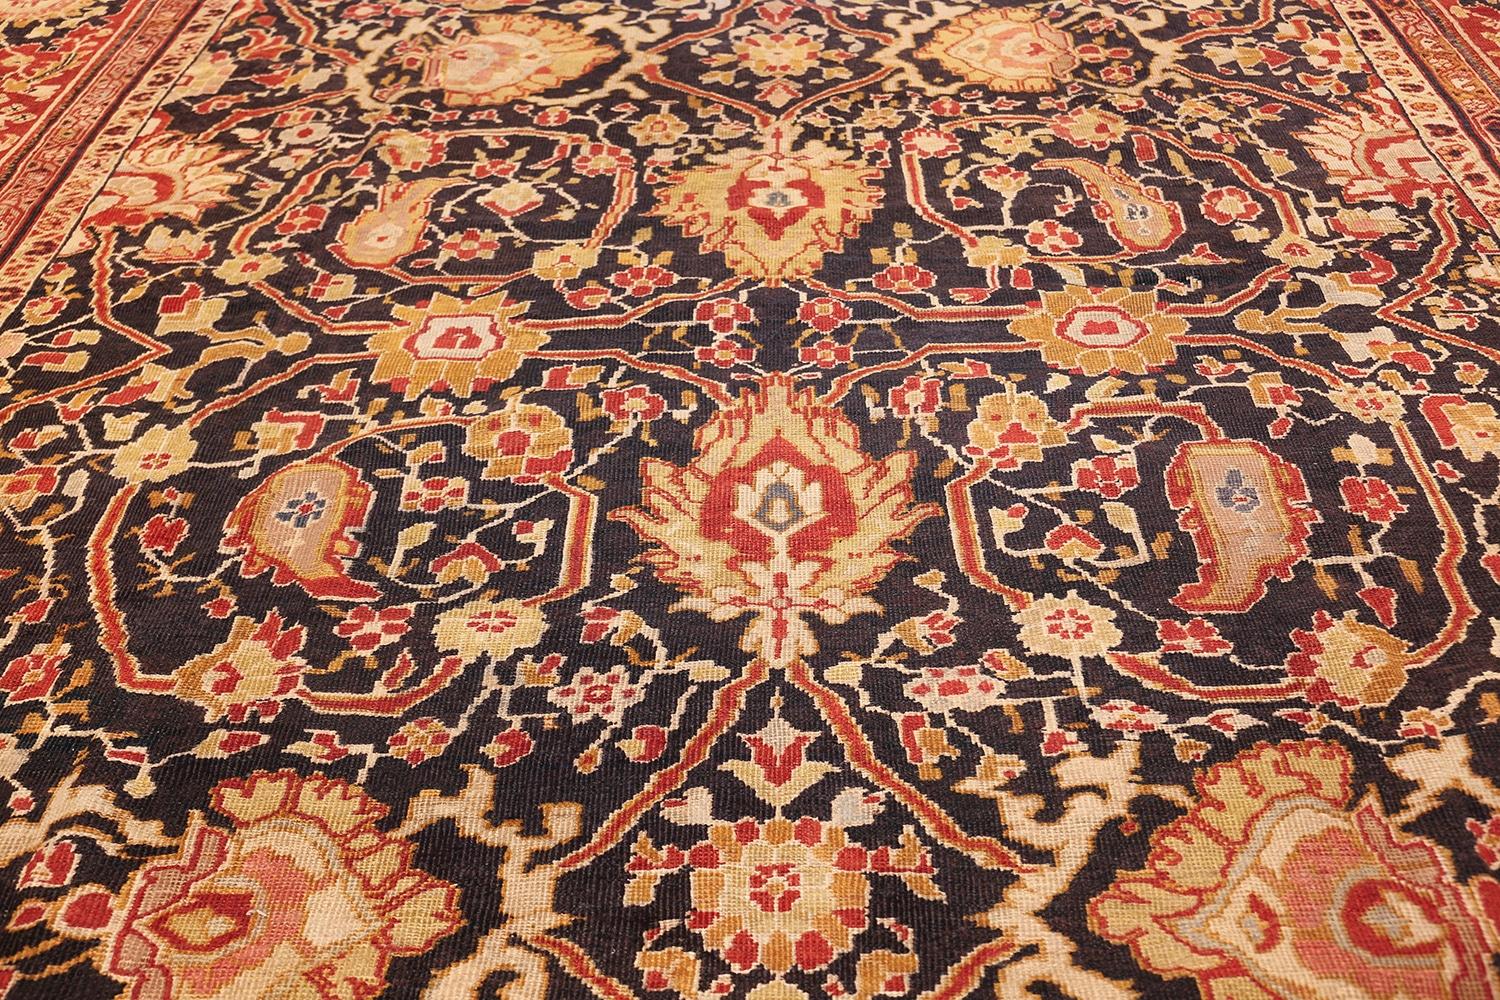 Magnifique et impressionnant tapis persan ancien Ziegler Sultanabad, noir et rouge, origine : Perse, vers la fin du XIXe siècle - Les tapis Eleg Sultanabad occupent une place particulière dans l'histoire du tapis et constituent un ajout élégant à